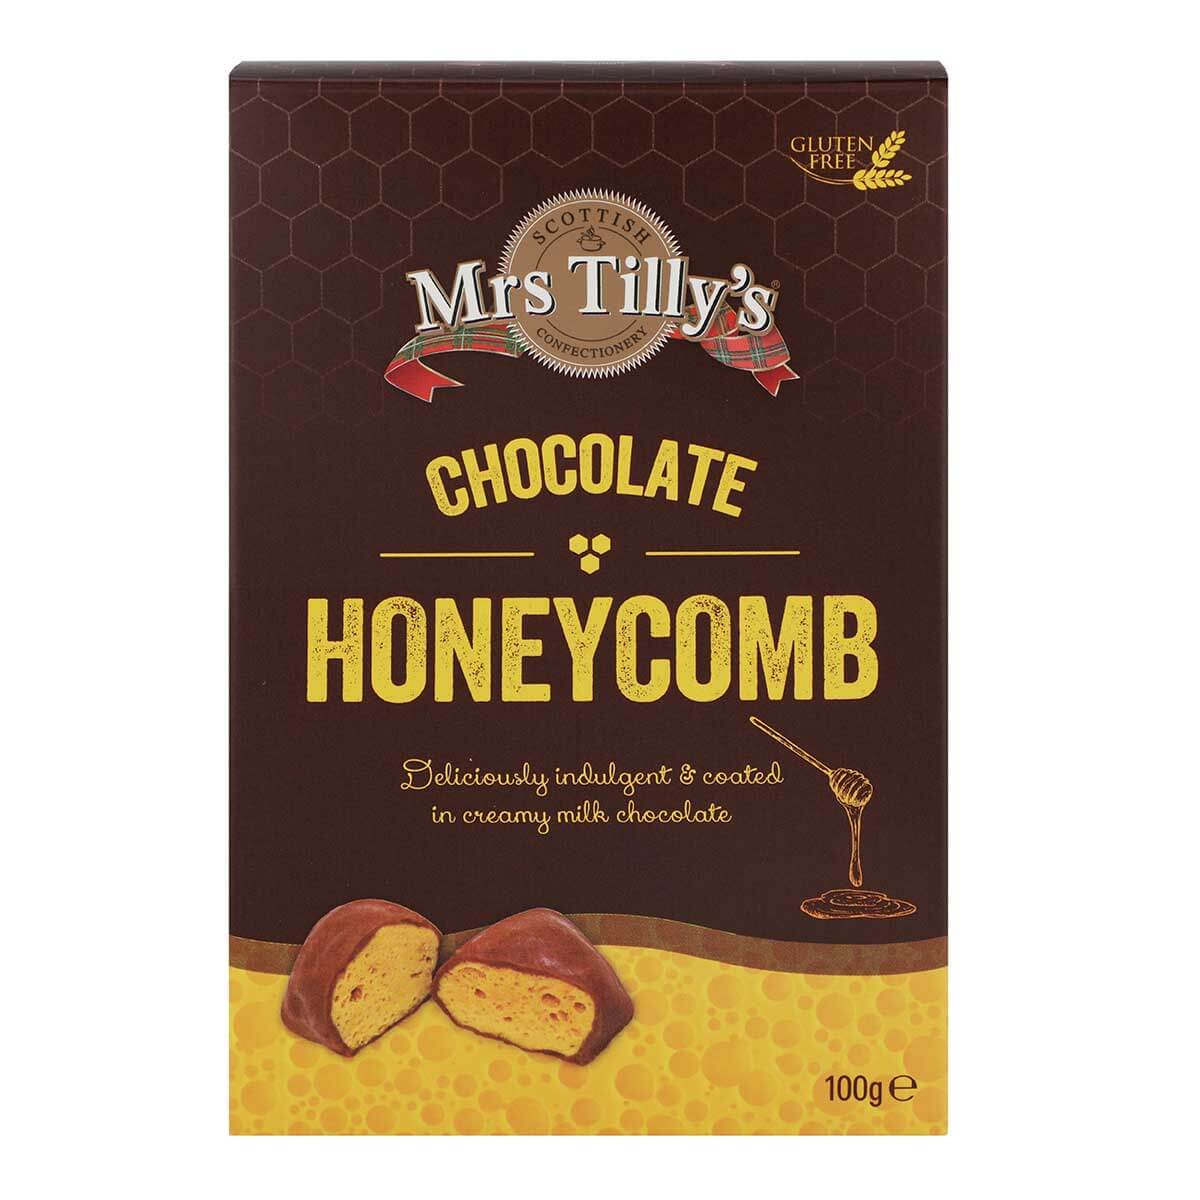 Chocolate Honeycomb Gift Box 100g